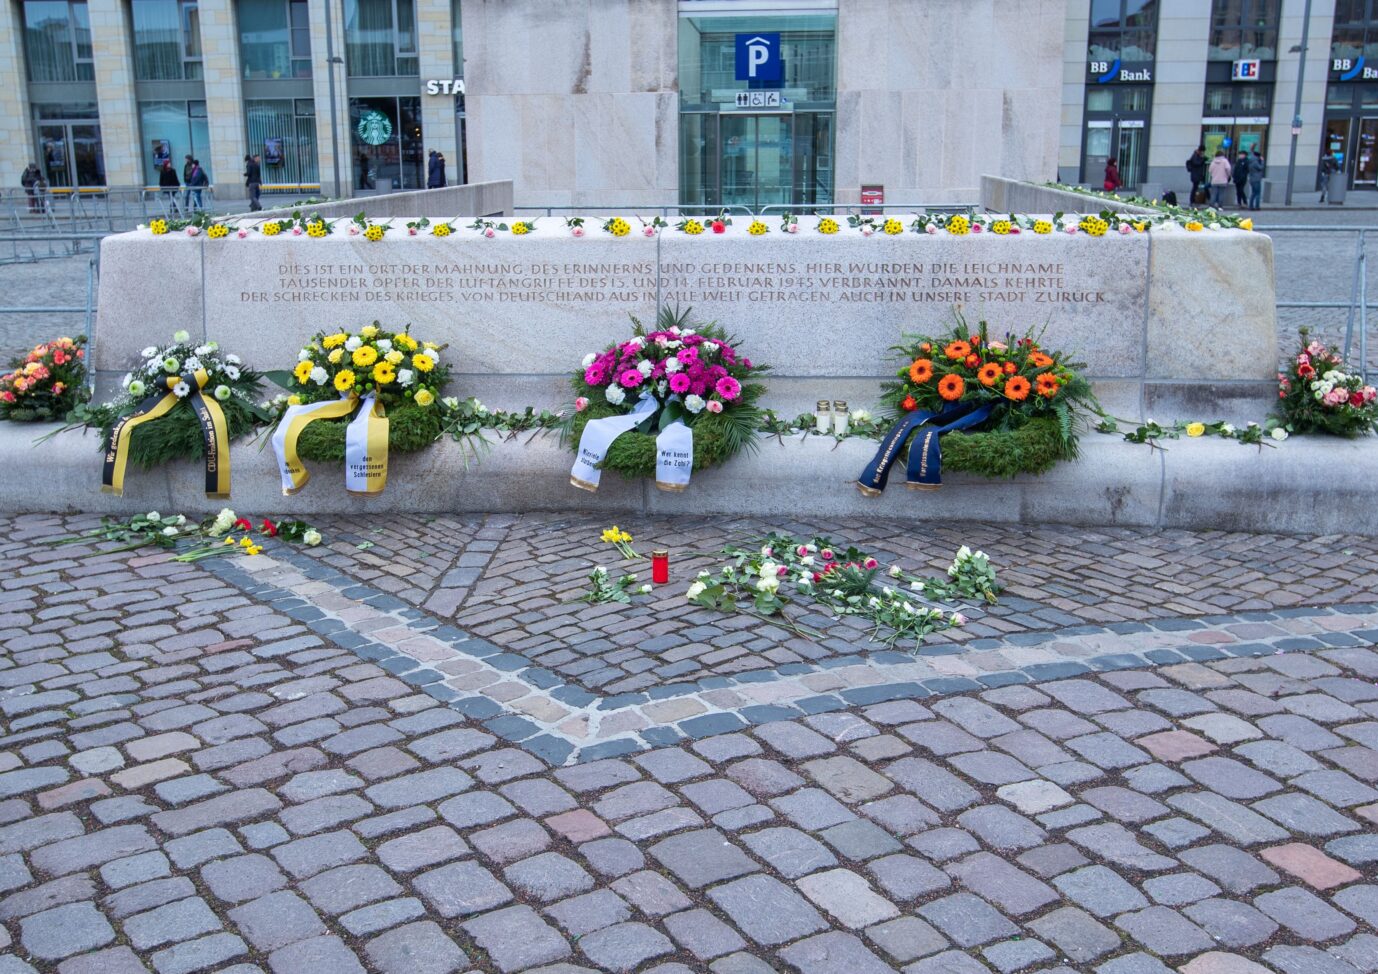 So sah das Denkmal für die Dresdner Bombenopfer auf dem Altmarkt vor der Schändung aus.